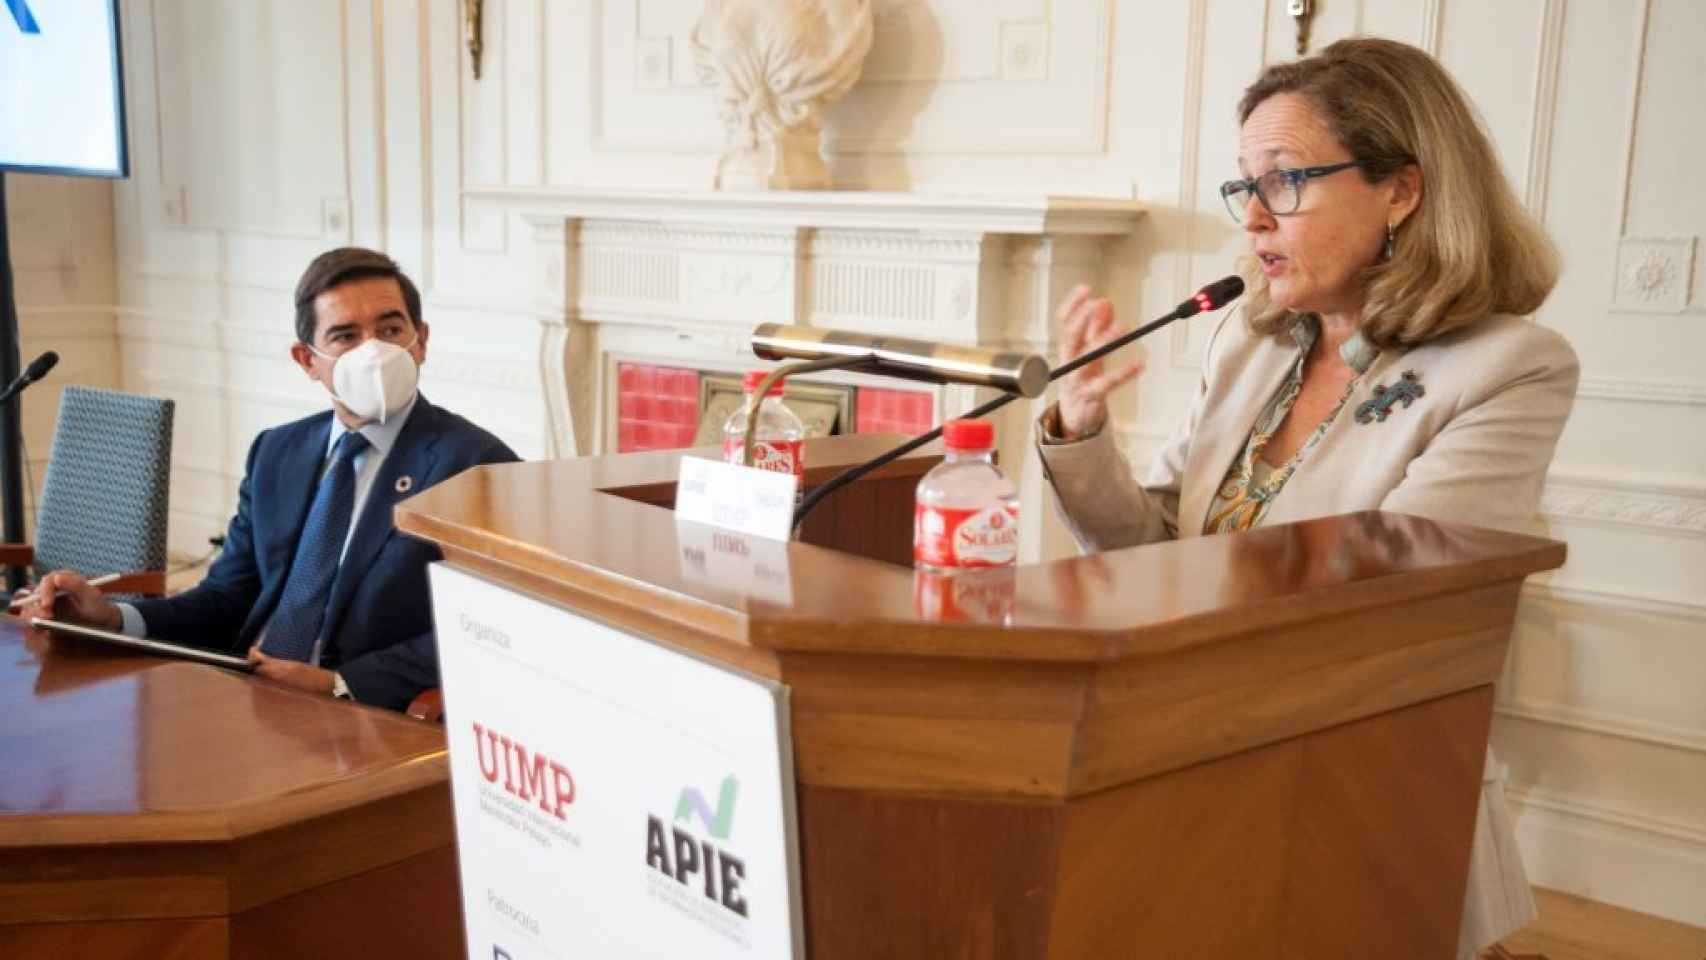 Nadia Calviño, vicepresidenta económica, en la inauguración del curso de la Apie en Santander.